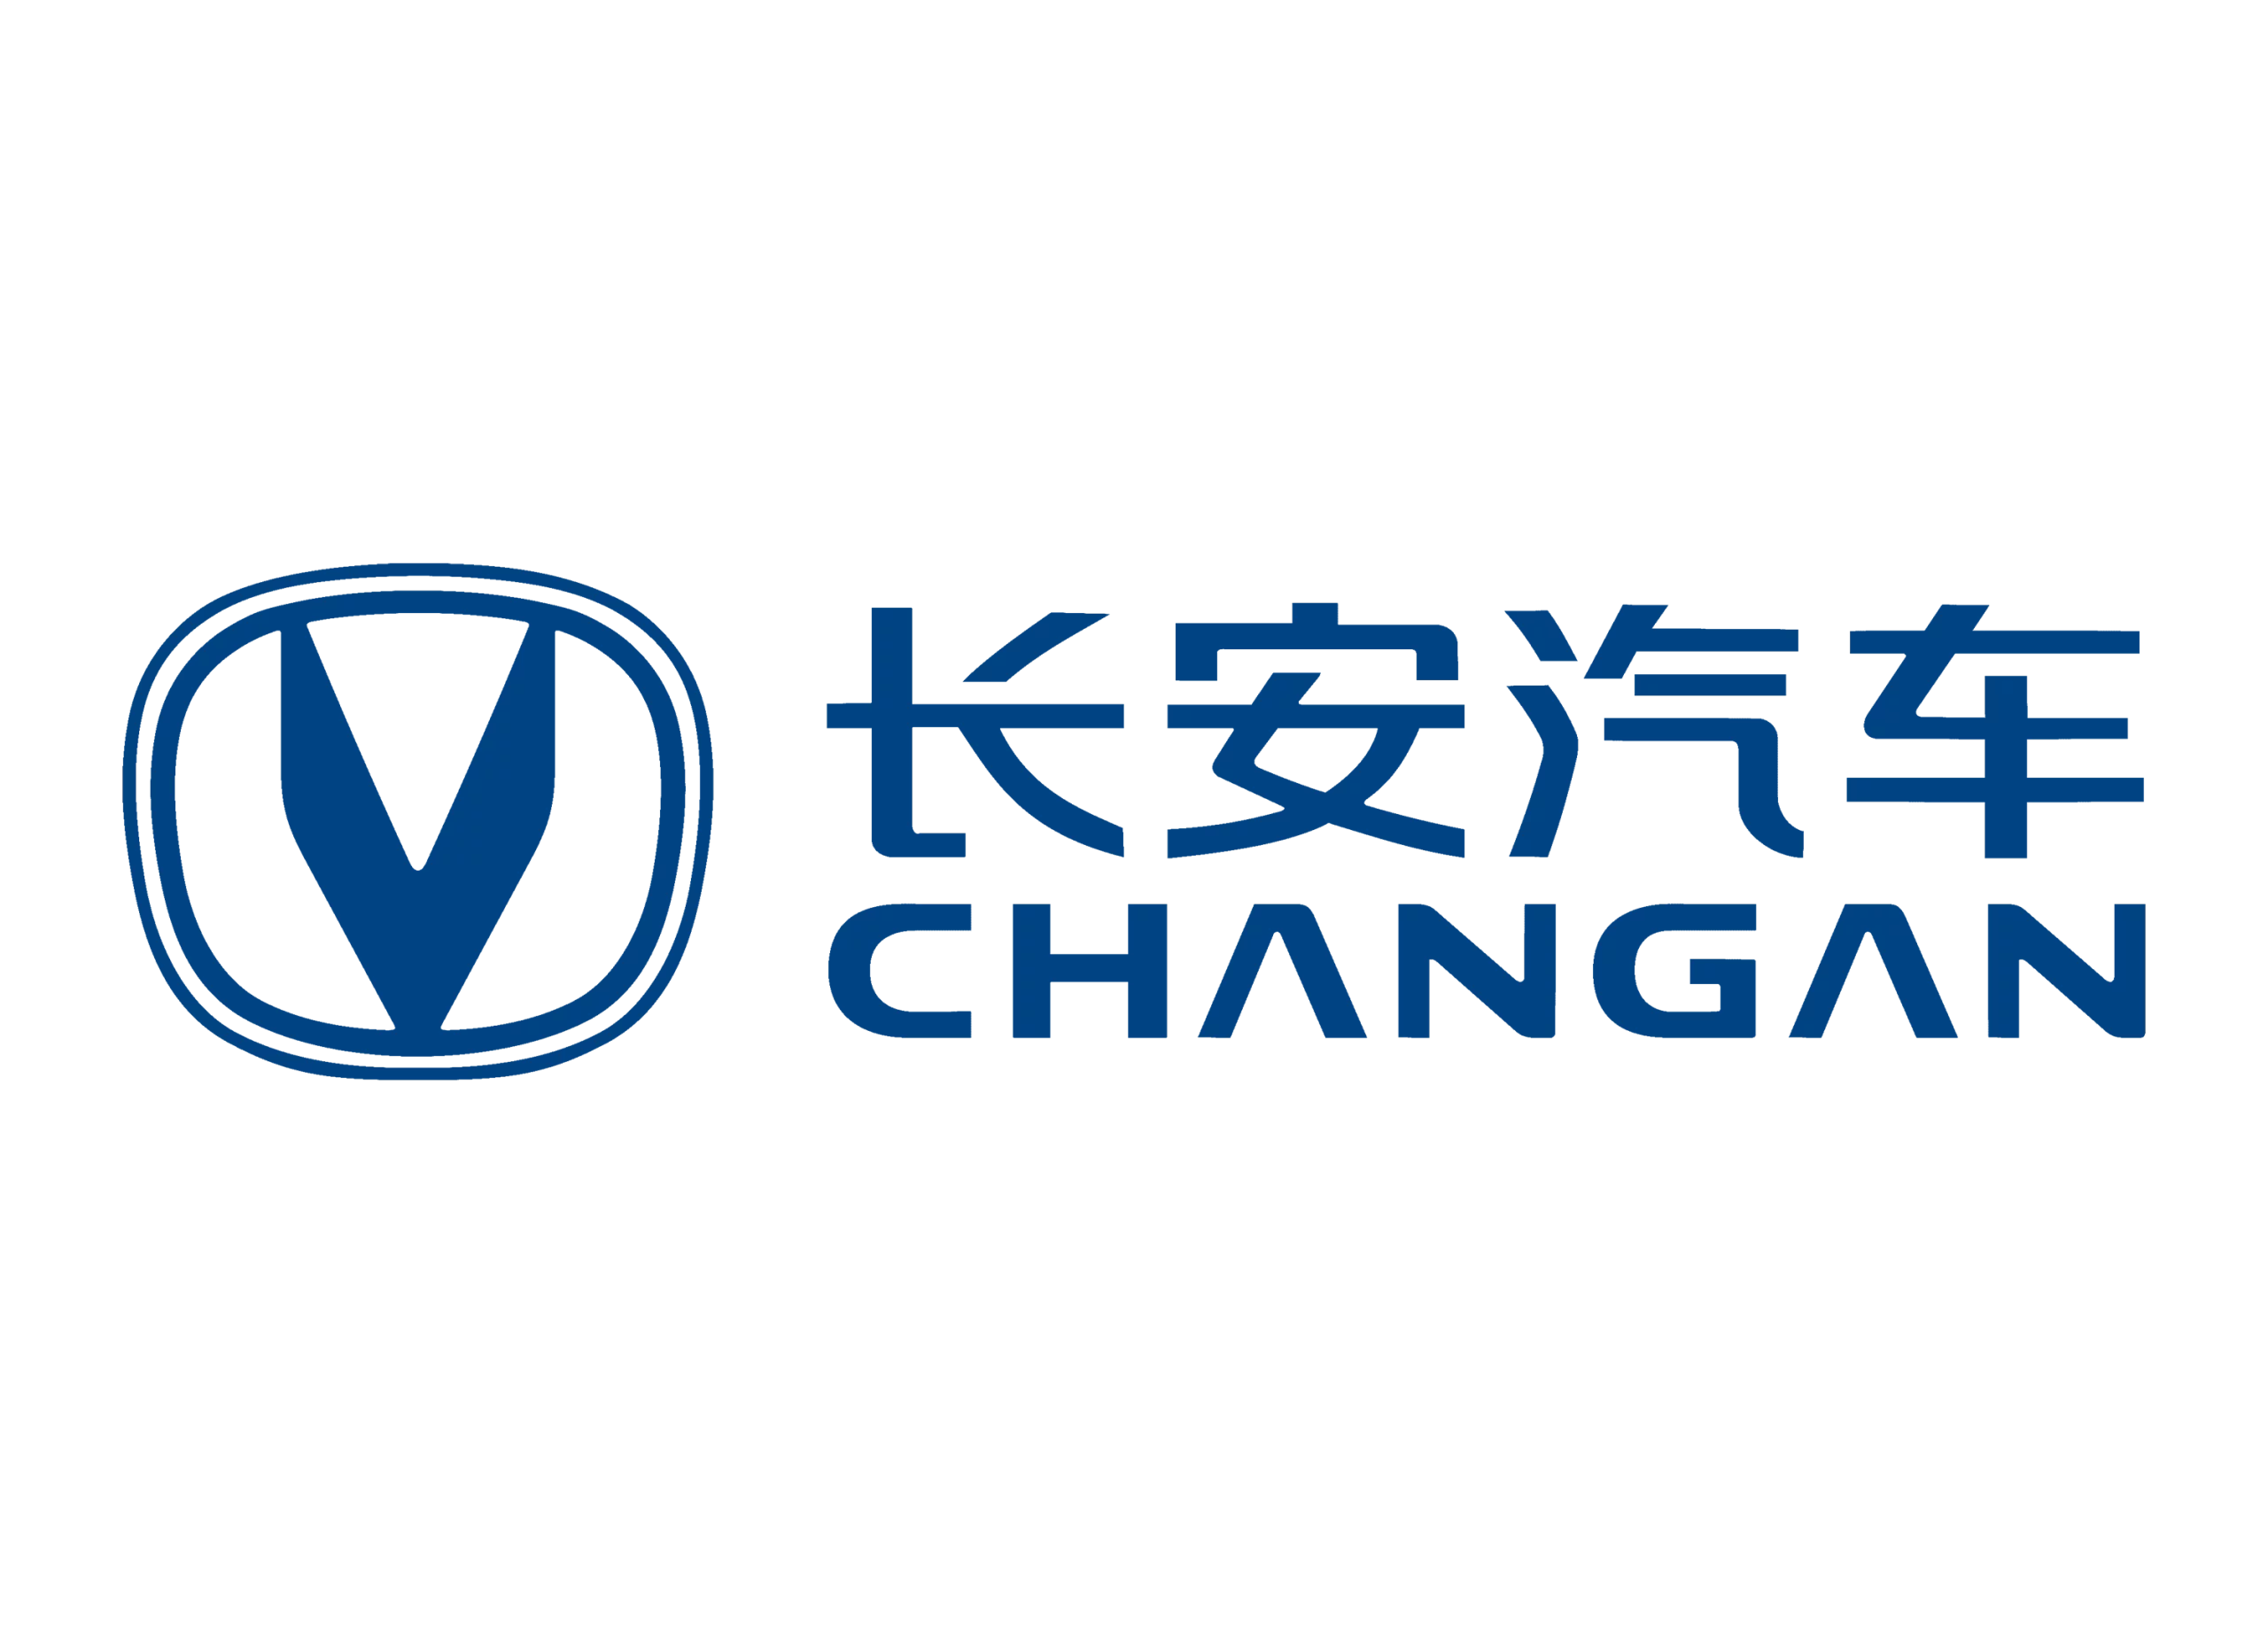 Changan logo 2020-present